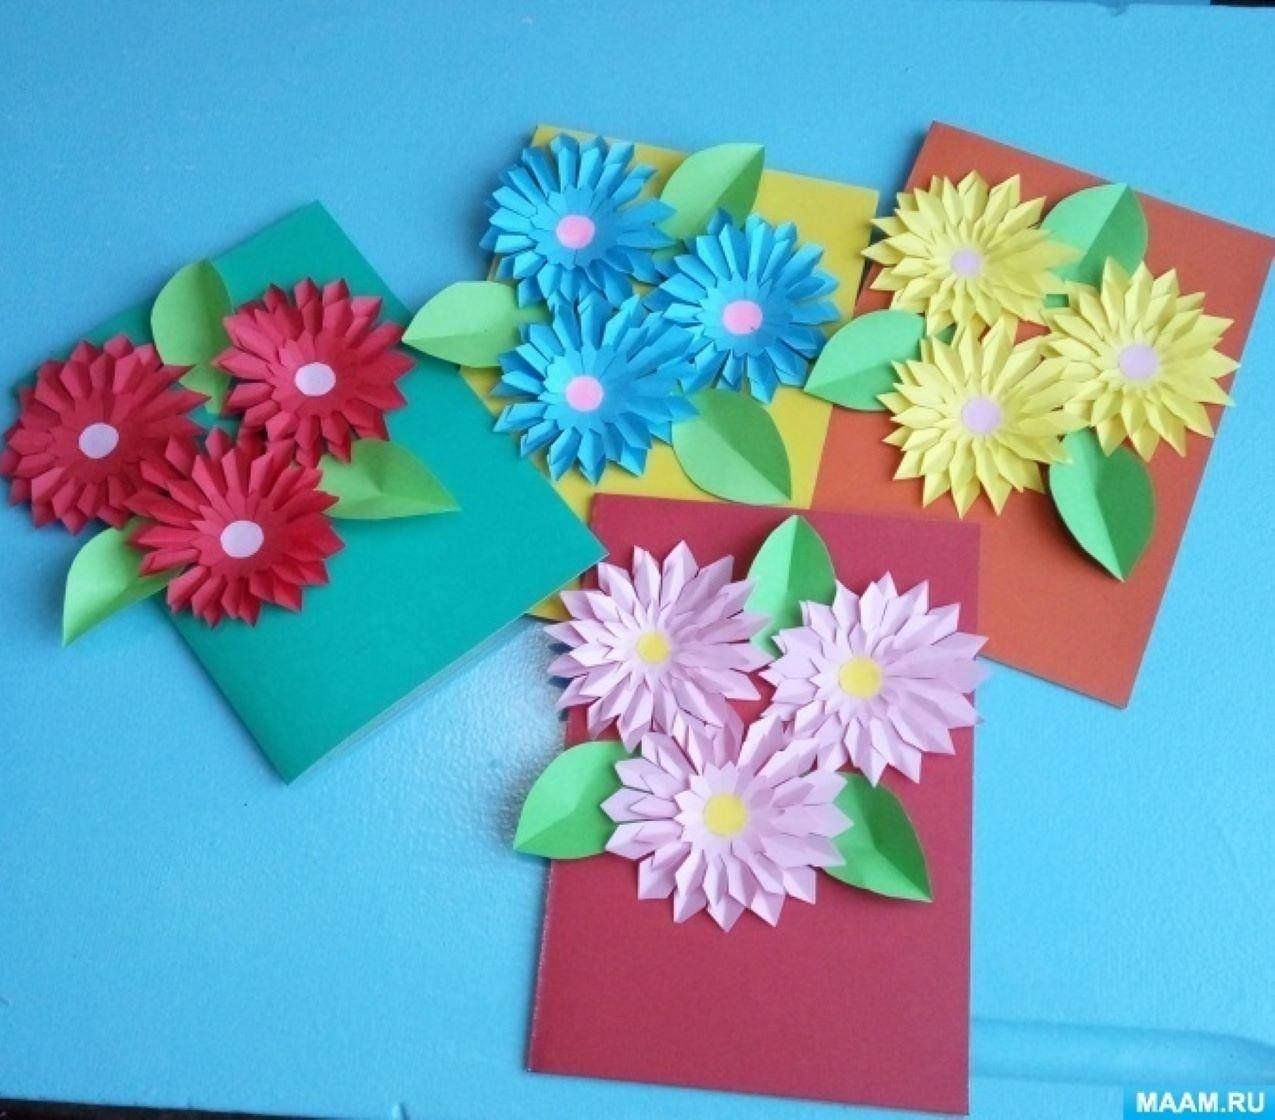 Видео из бумаги для мамы. Поделка открытка. Поделки ко Дню матери. Аппликация цветы для мамы. Открытка из цветной бумаги.